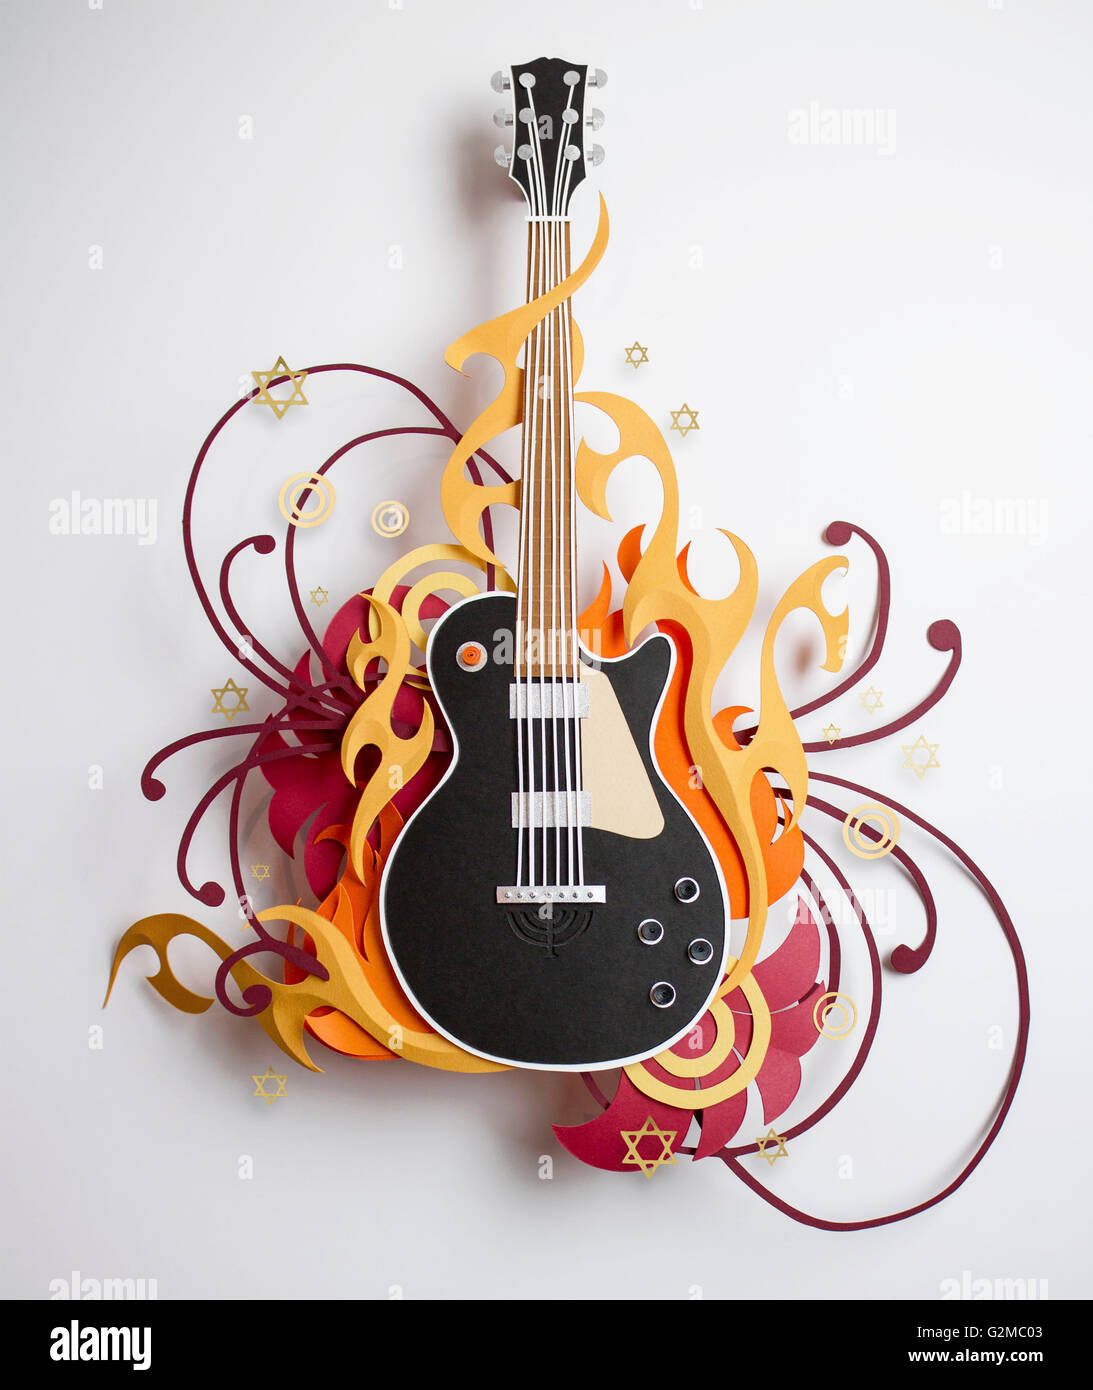 Stars and swirls surrounding paper craft guitar Stock Photo